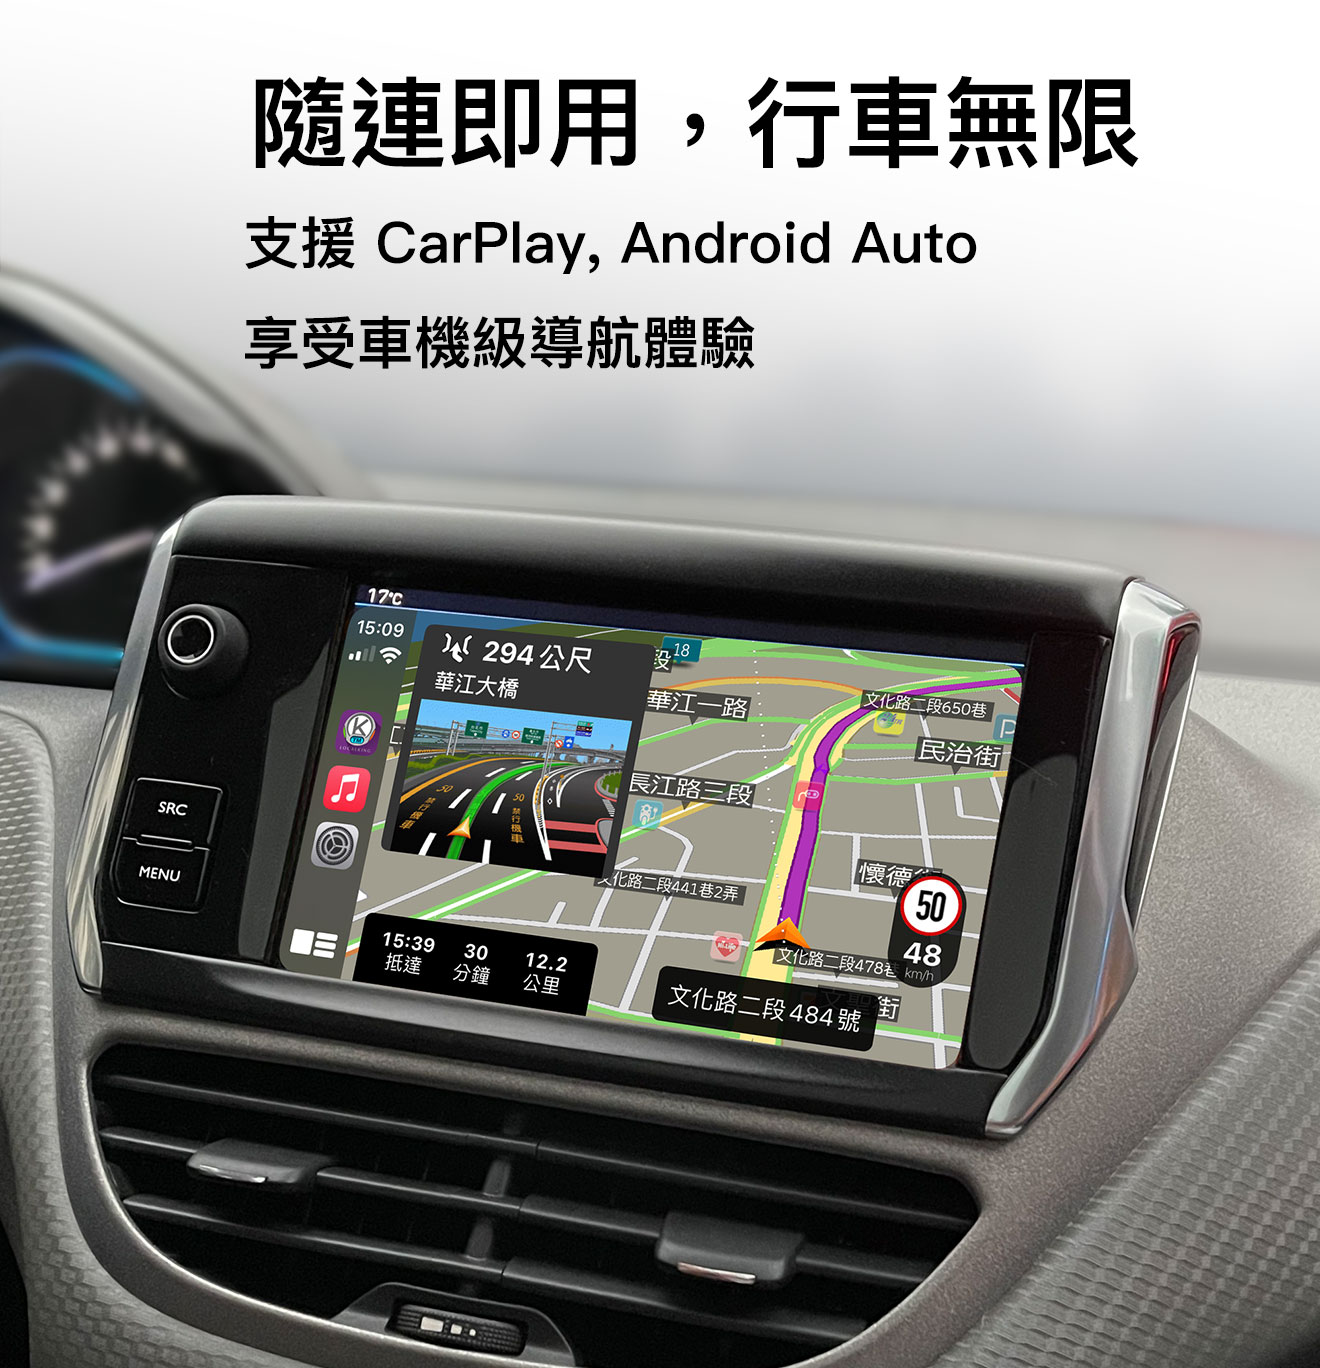 支援CarPlay及Android Auto